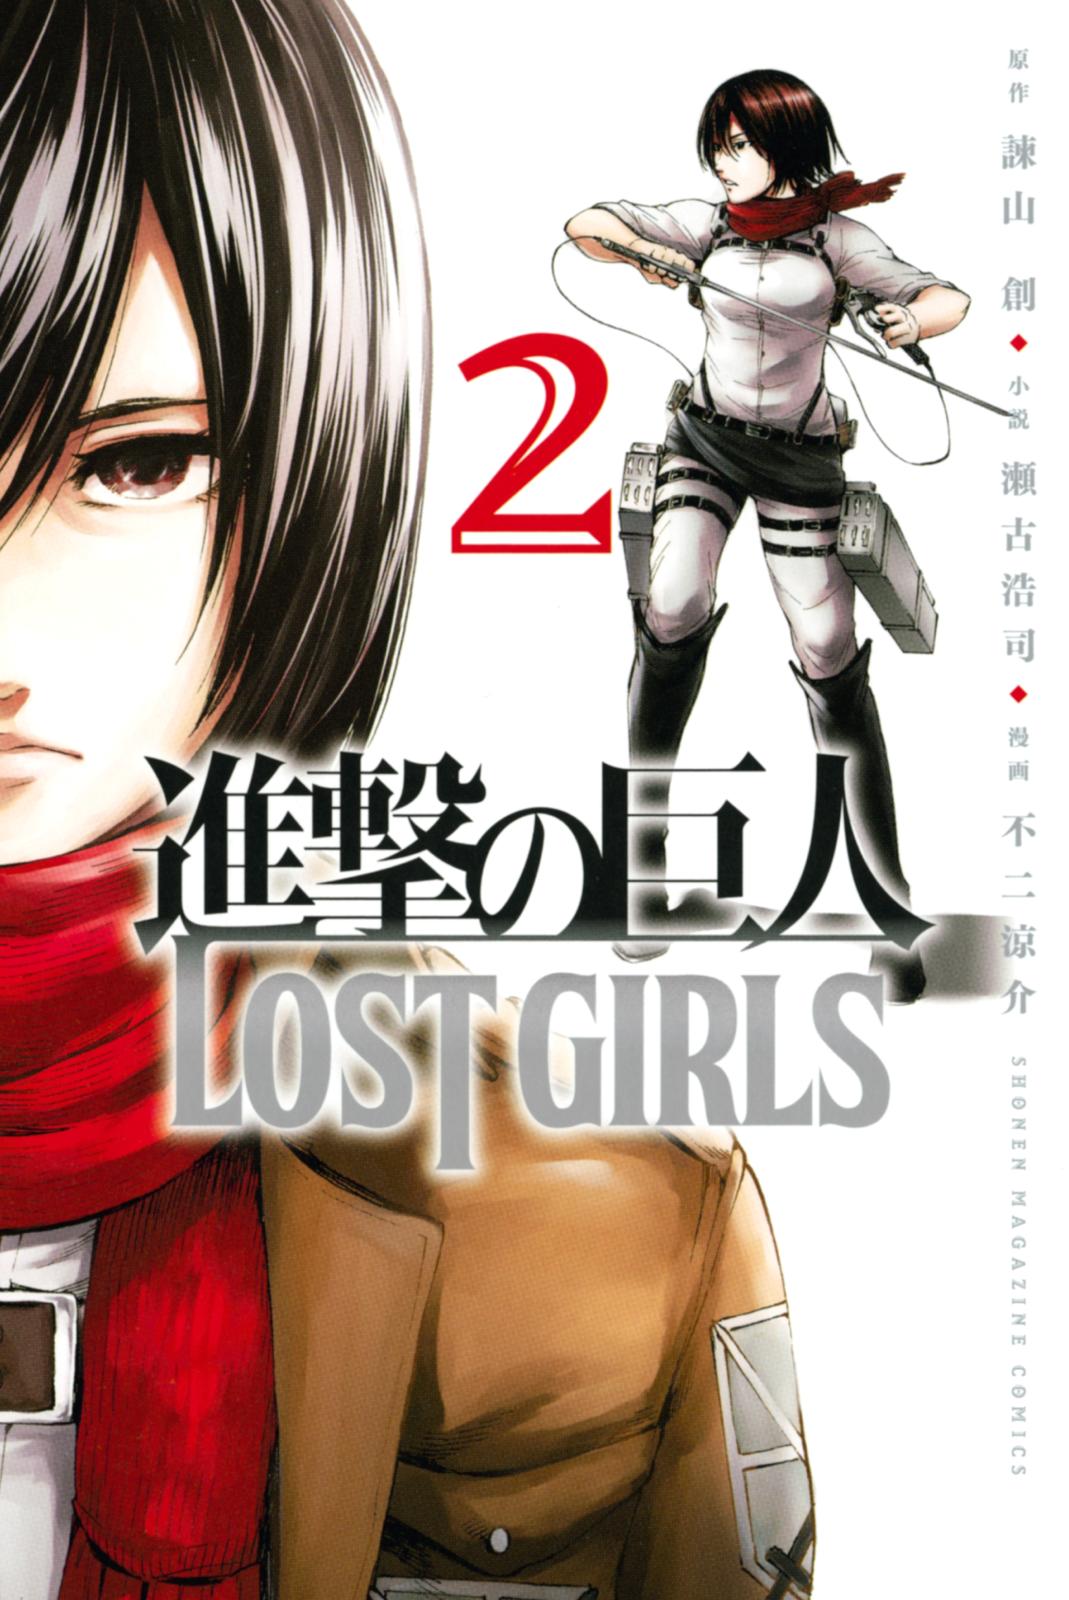 Shingeki no Kyojin Lost Girls OVA 03 « DameDesuYo